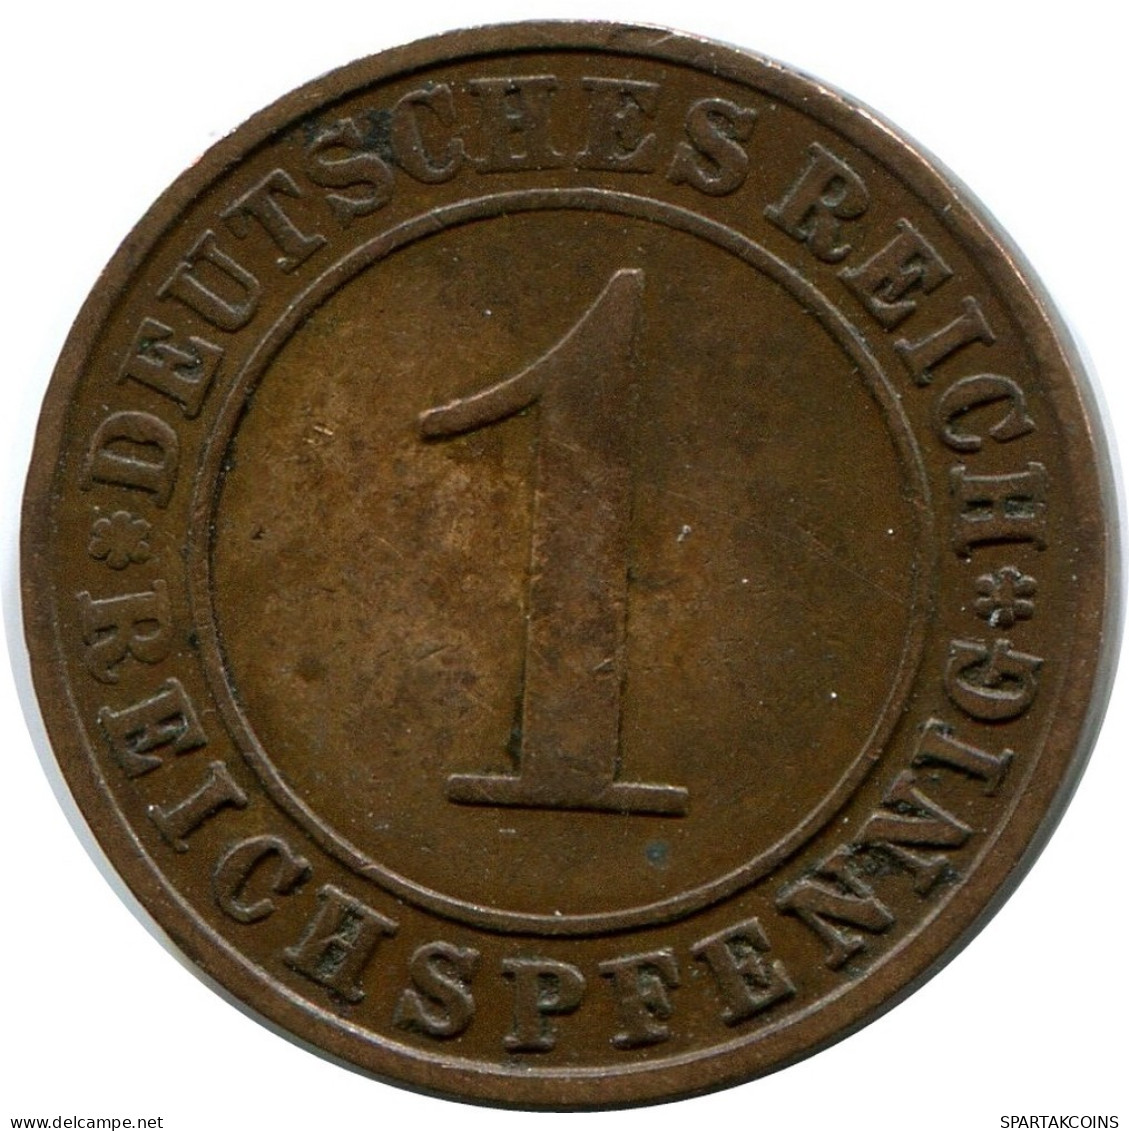 1 REICHSPFENNIG 1924 A ALEMANIA Moneda GERMANY #DB771.E.A - 1 Rentenpfennig & 1 Reichspfennig